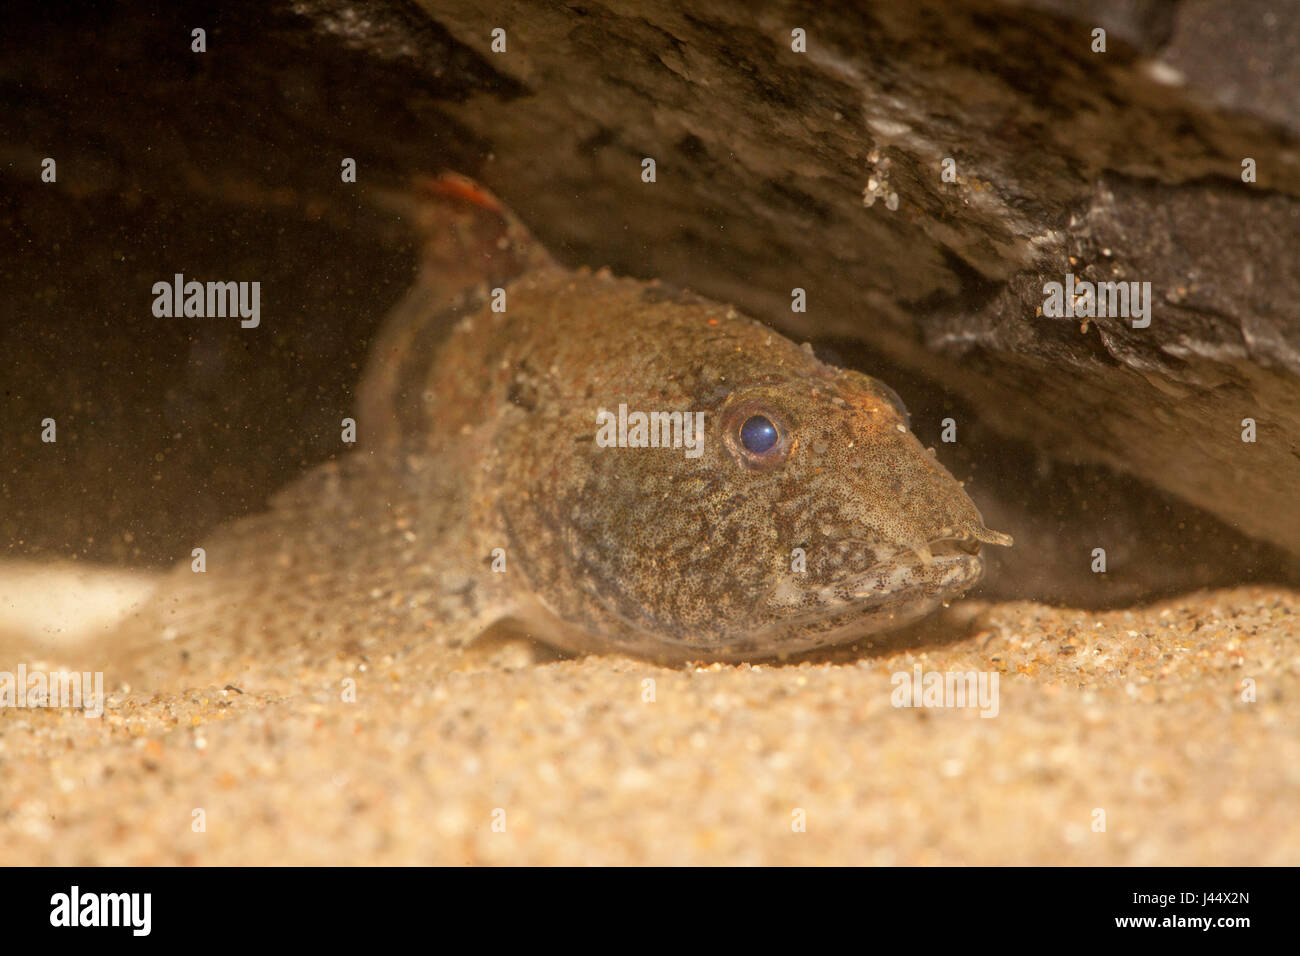 tubenose goby lying on sand Stock Photo